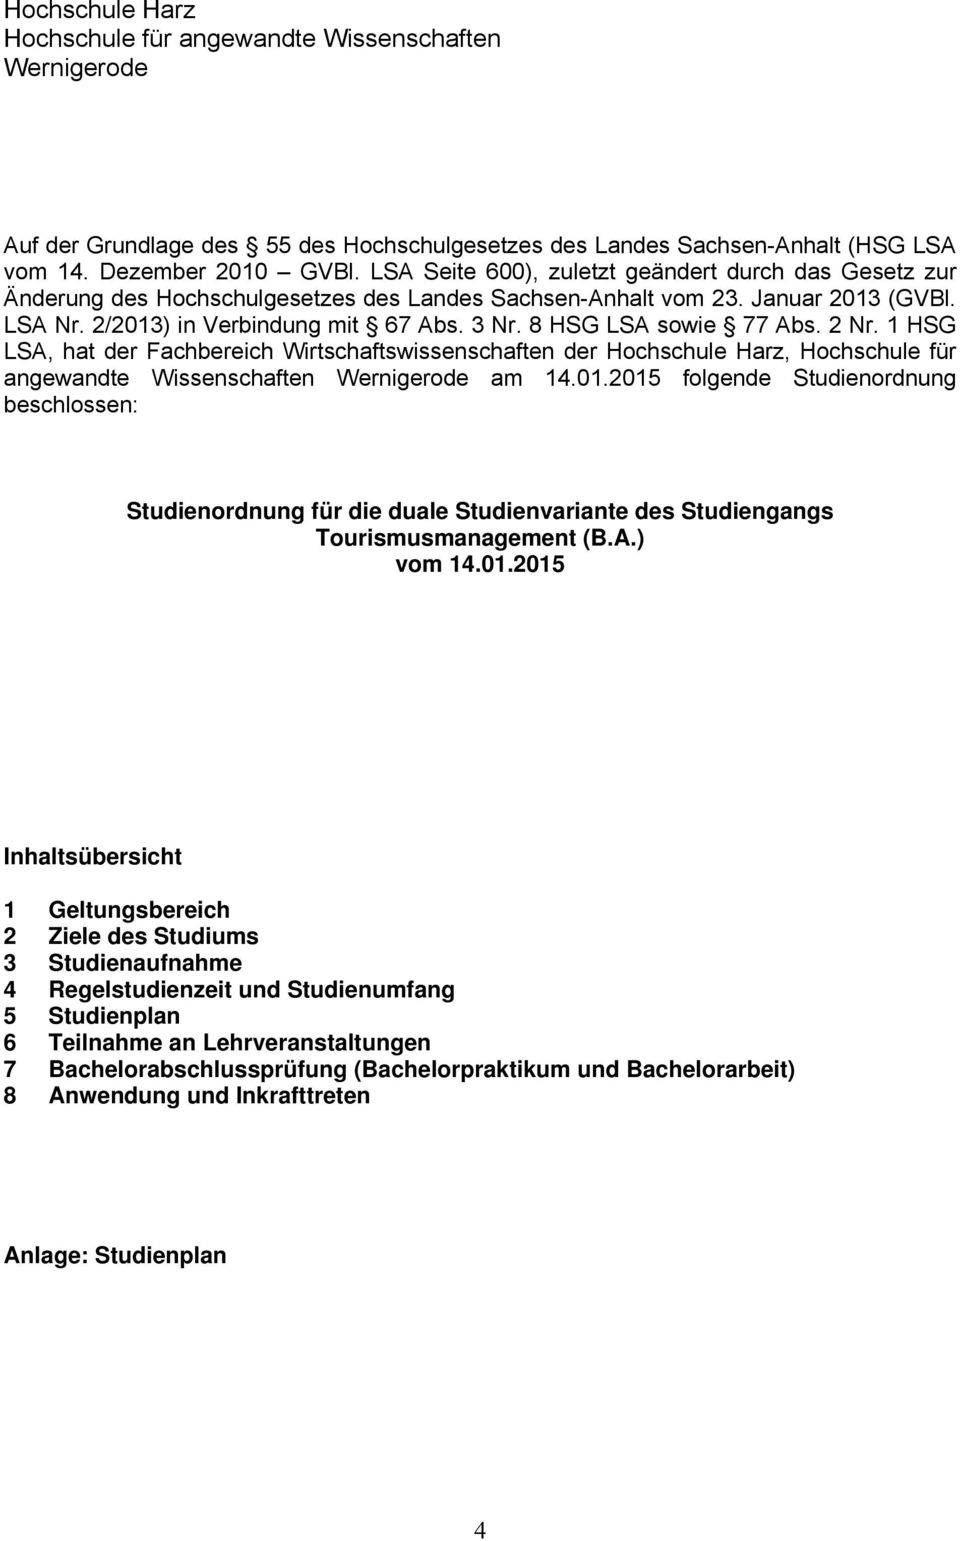 8 HSG LSA sowie 77 Abs. 2 Nr. 1 HSG LSA, hat der Fachbereich Wirtschaftswissenschaften der Hochschule Harz, Hochschule für angewandte Wissenschaften Wernigerode am 14.01.